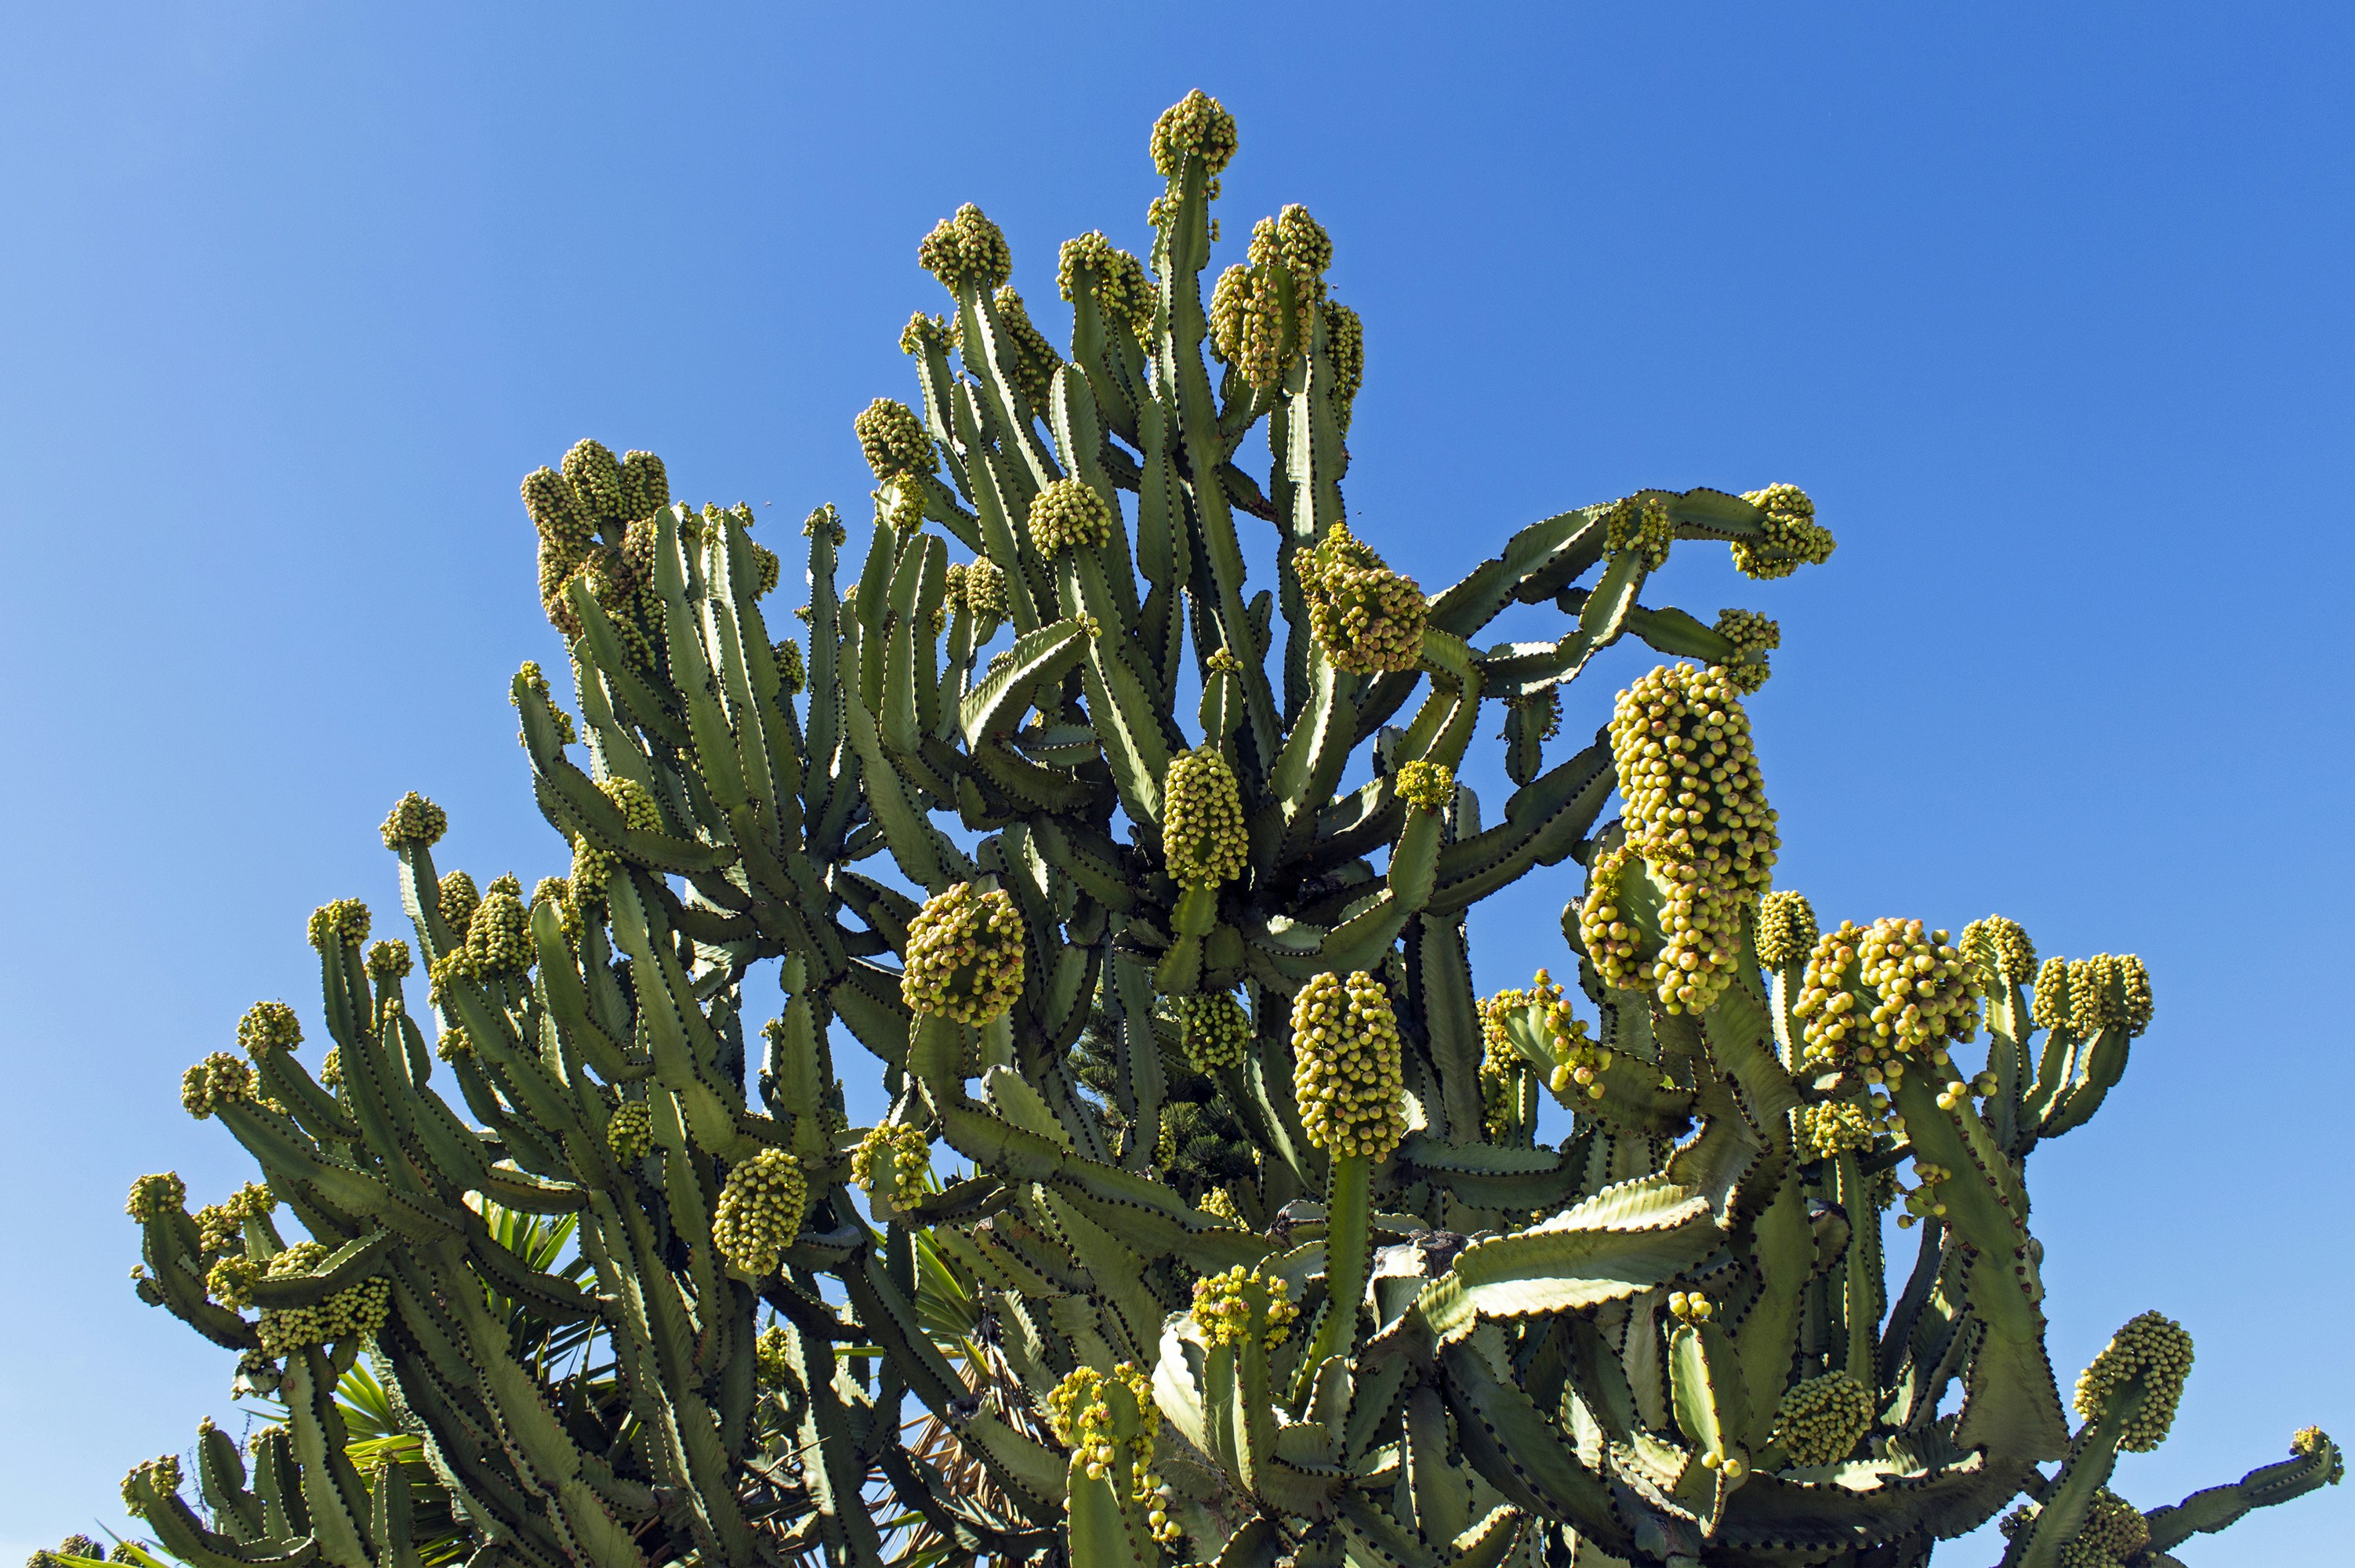 A unique structural cactus on a pristine blue sky